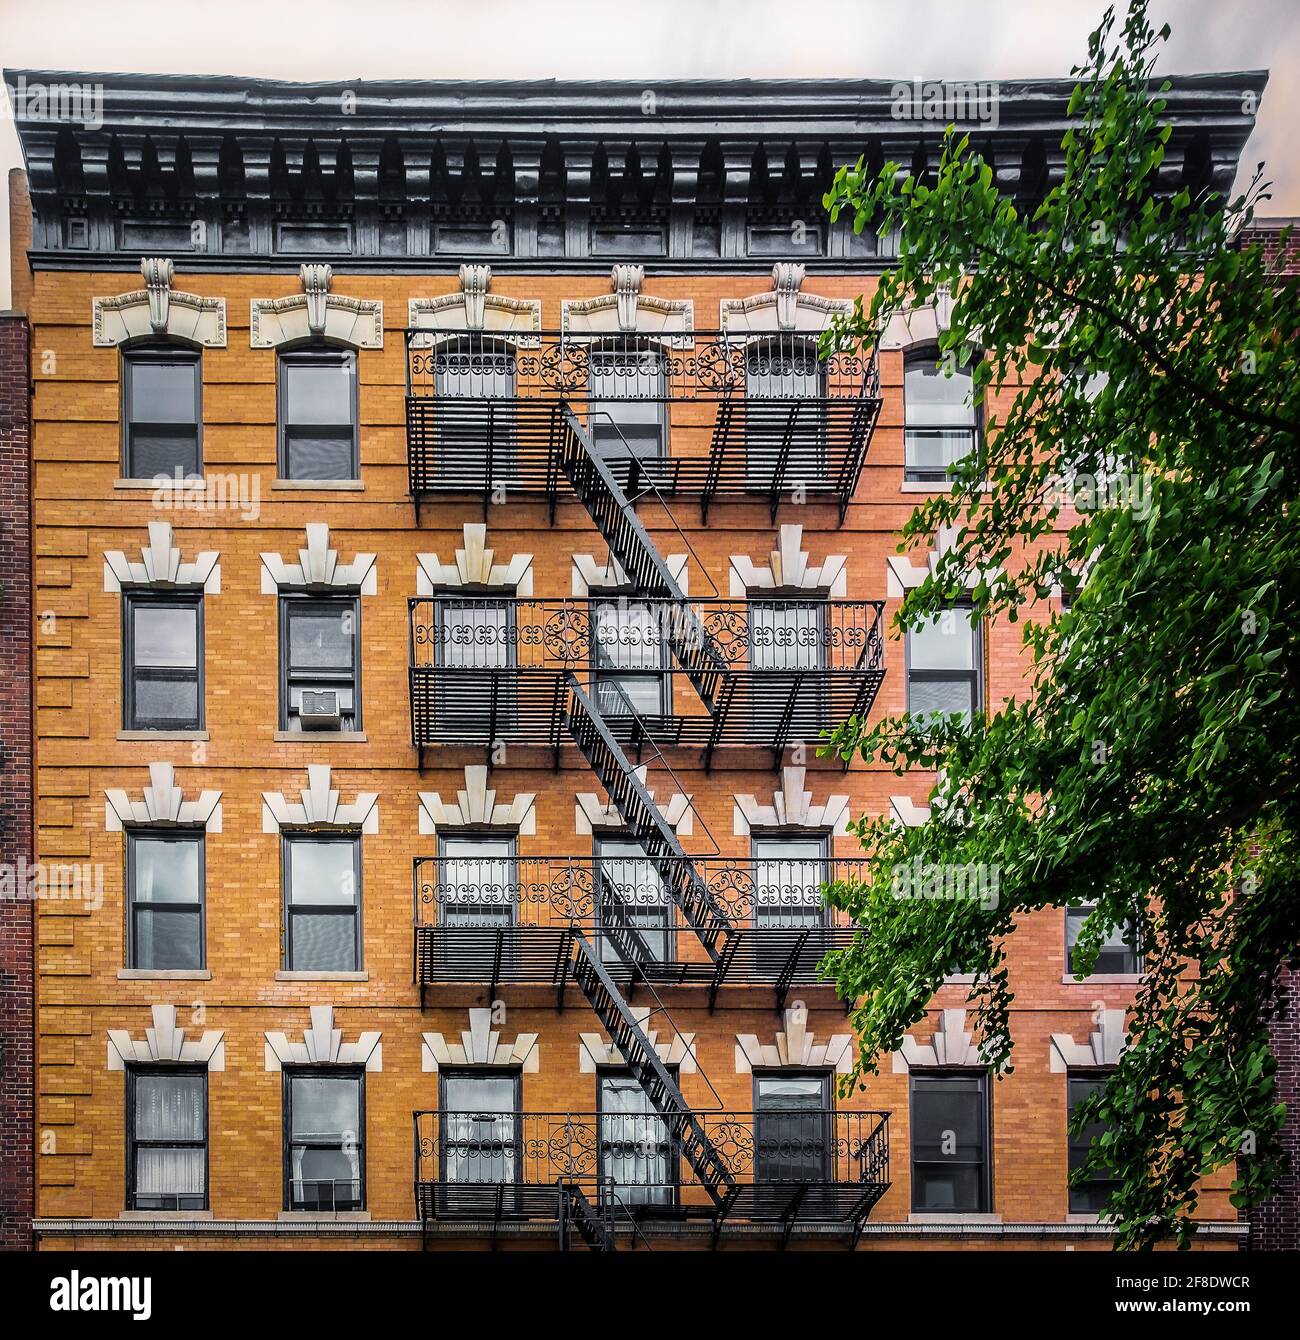 New York City, États-Unis, mai 2019, vue sur un bâtiment en brique orange avec évacuation incendie dans le quartier de West Village Banque D'Images